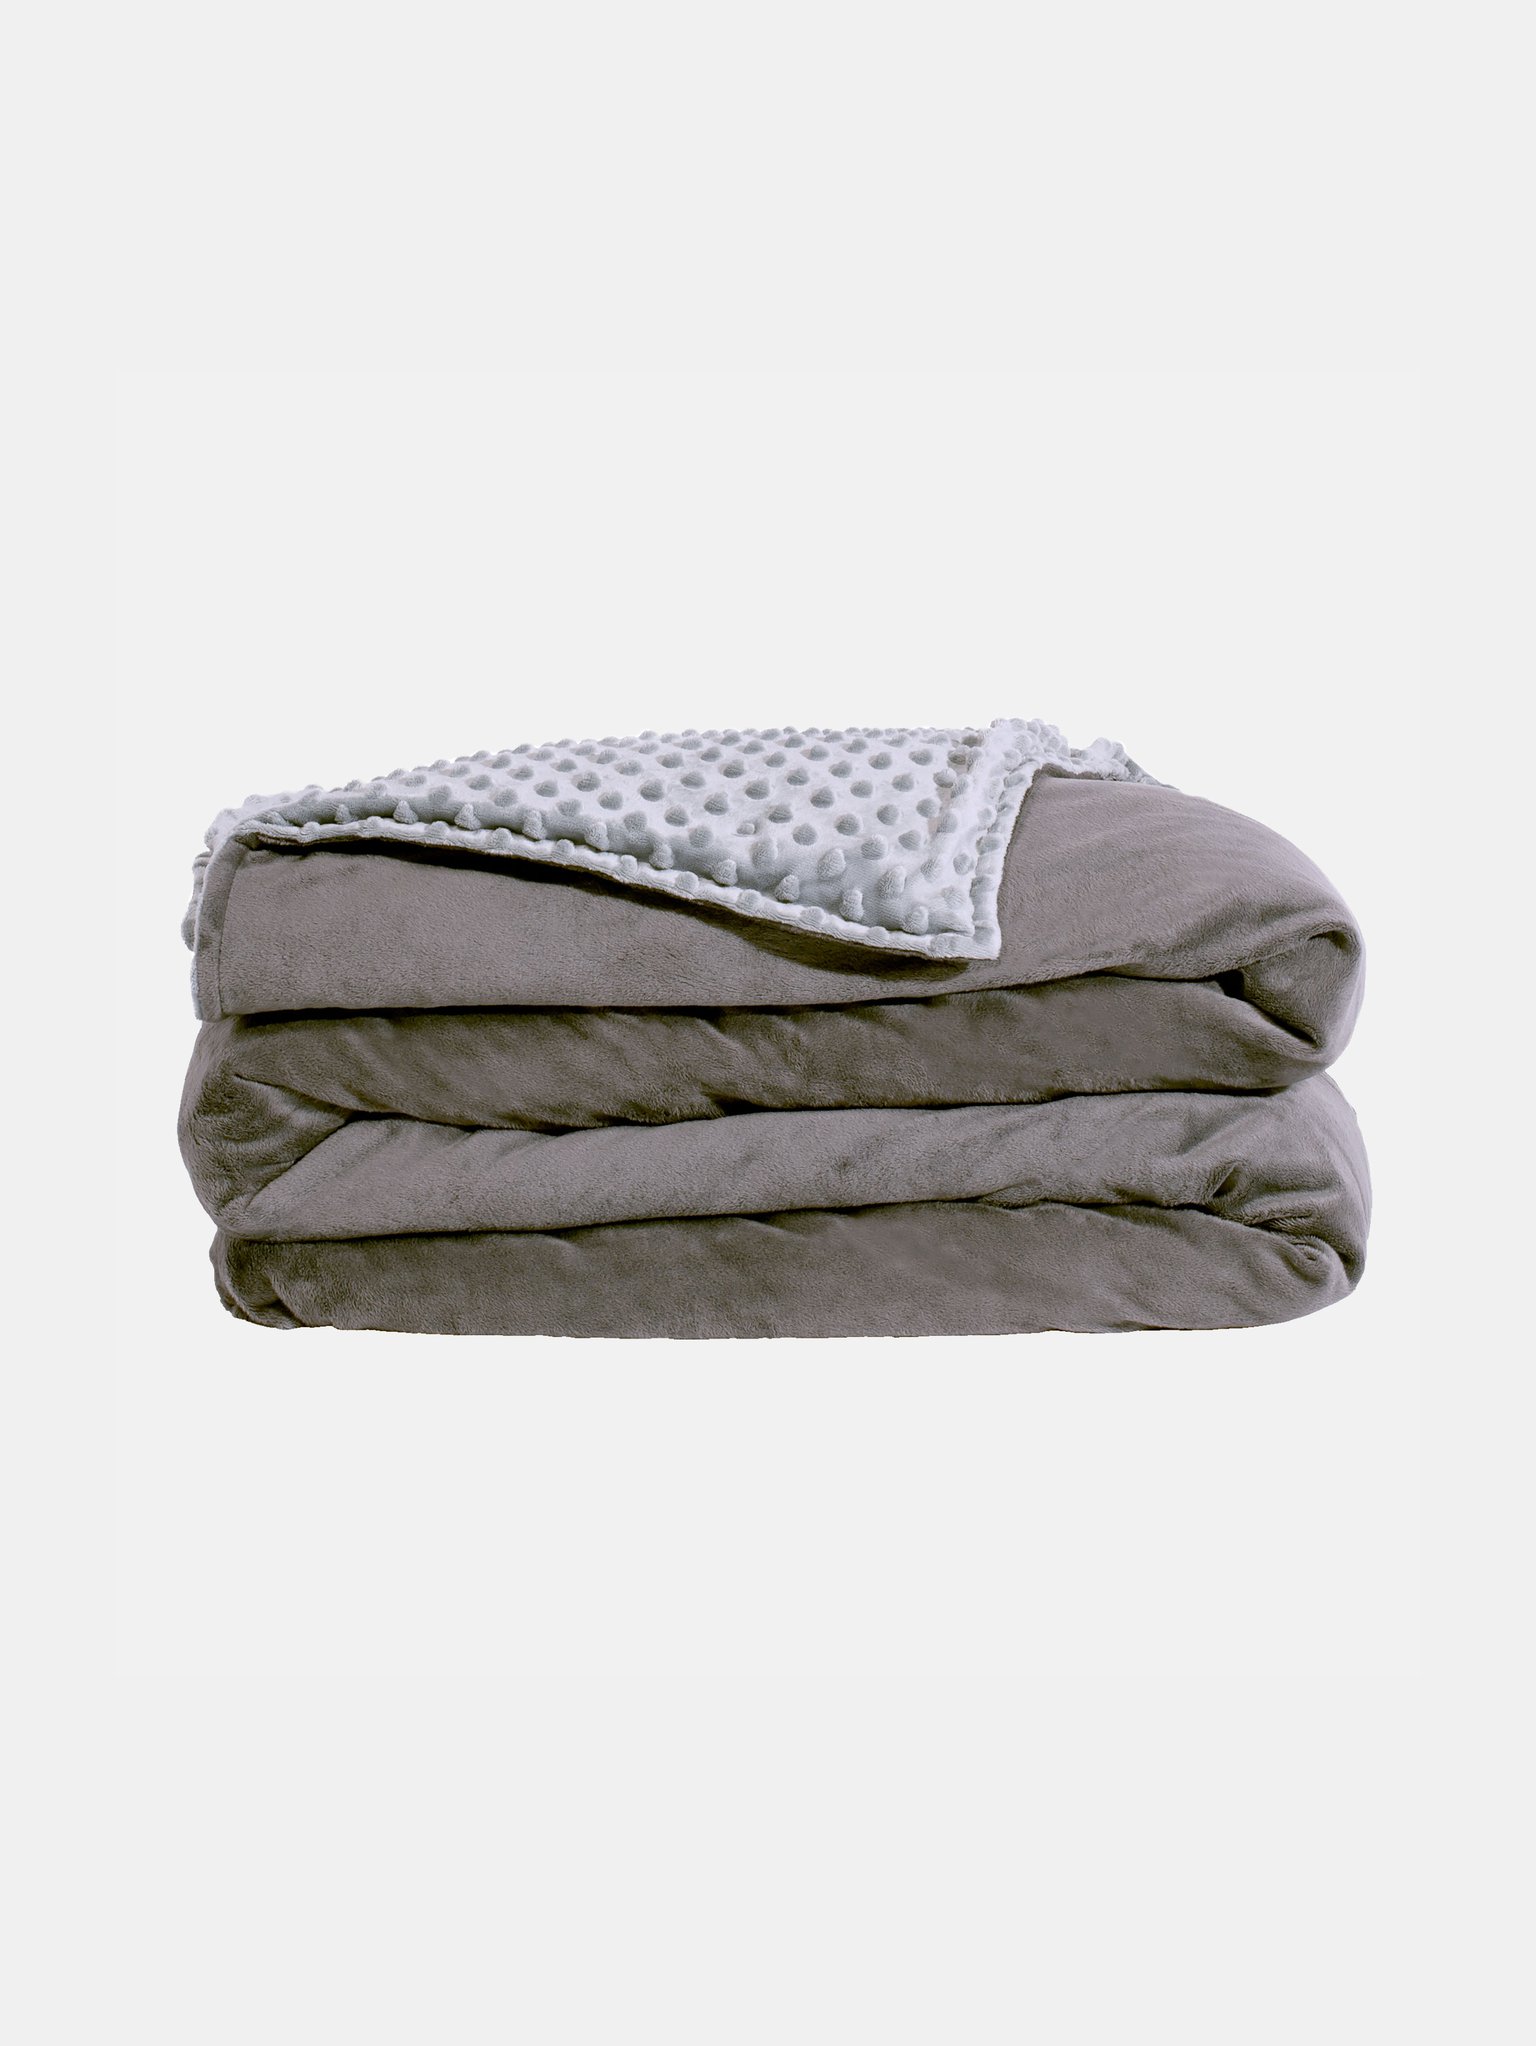 Yogasleep Weighted Blanket, 12lbs | Verishop